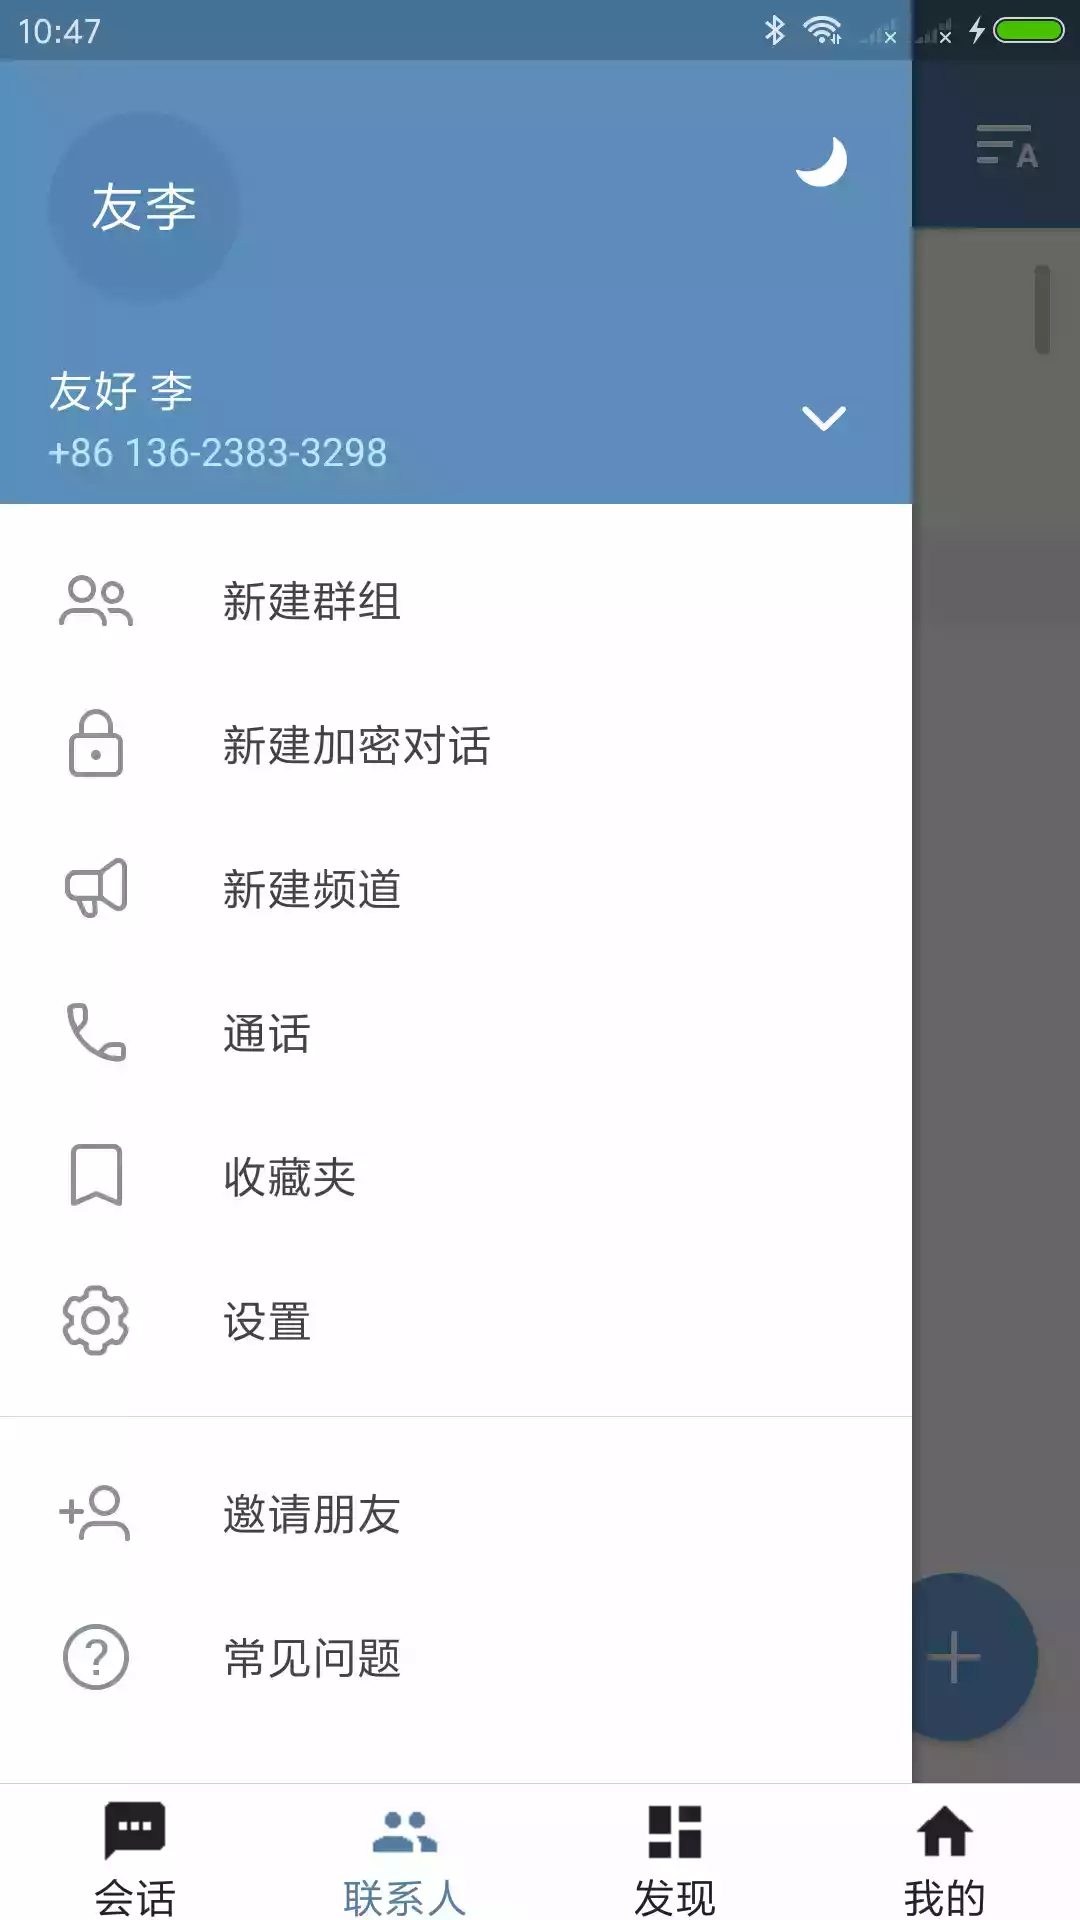 telegram中文版